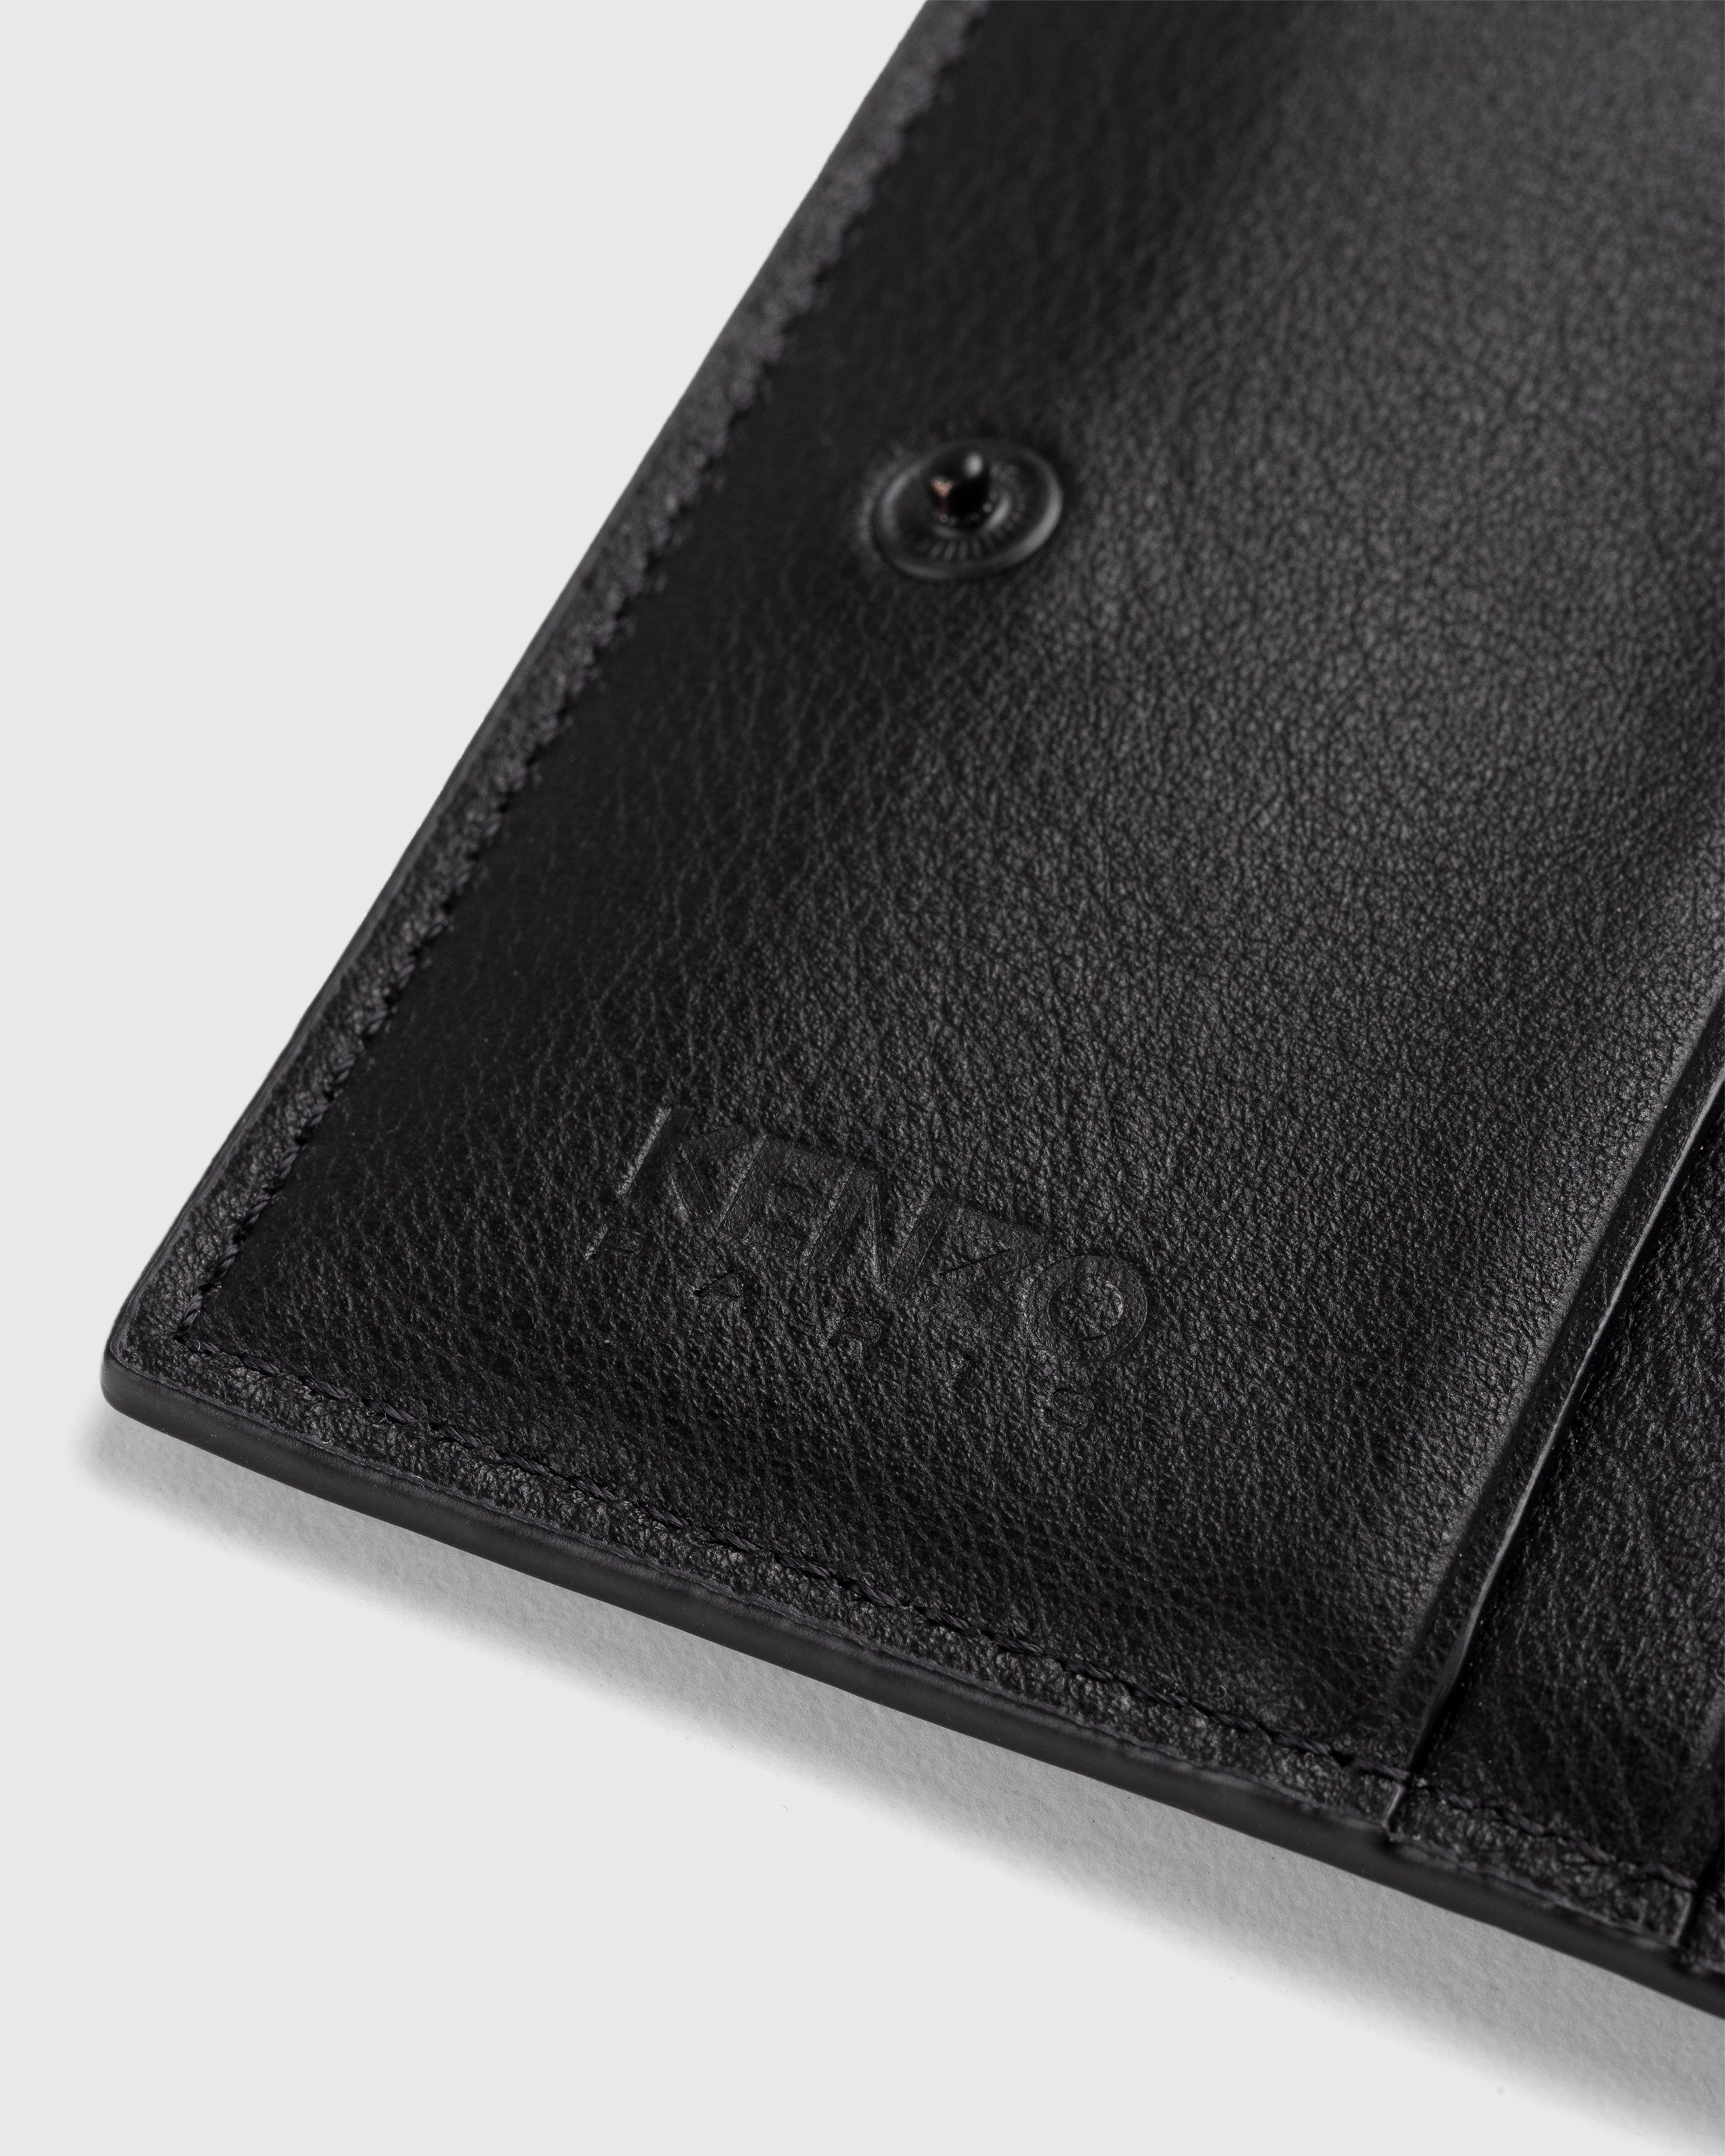 Kenzo – Crest Foldable Wallet Black - Wallets - Black - Image 4